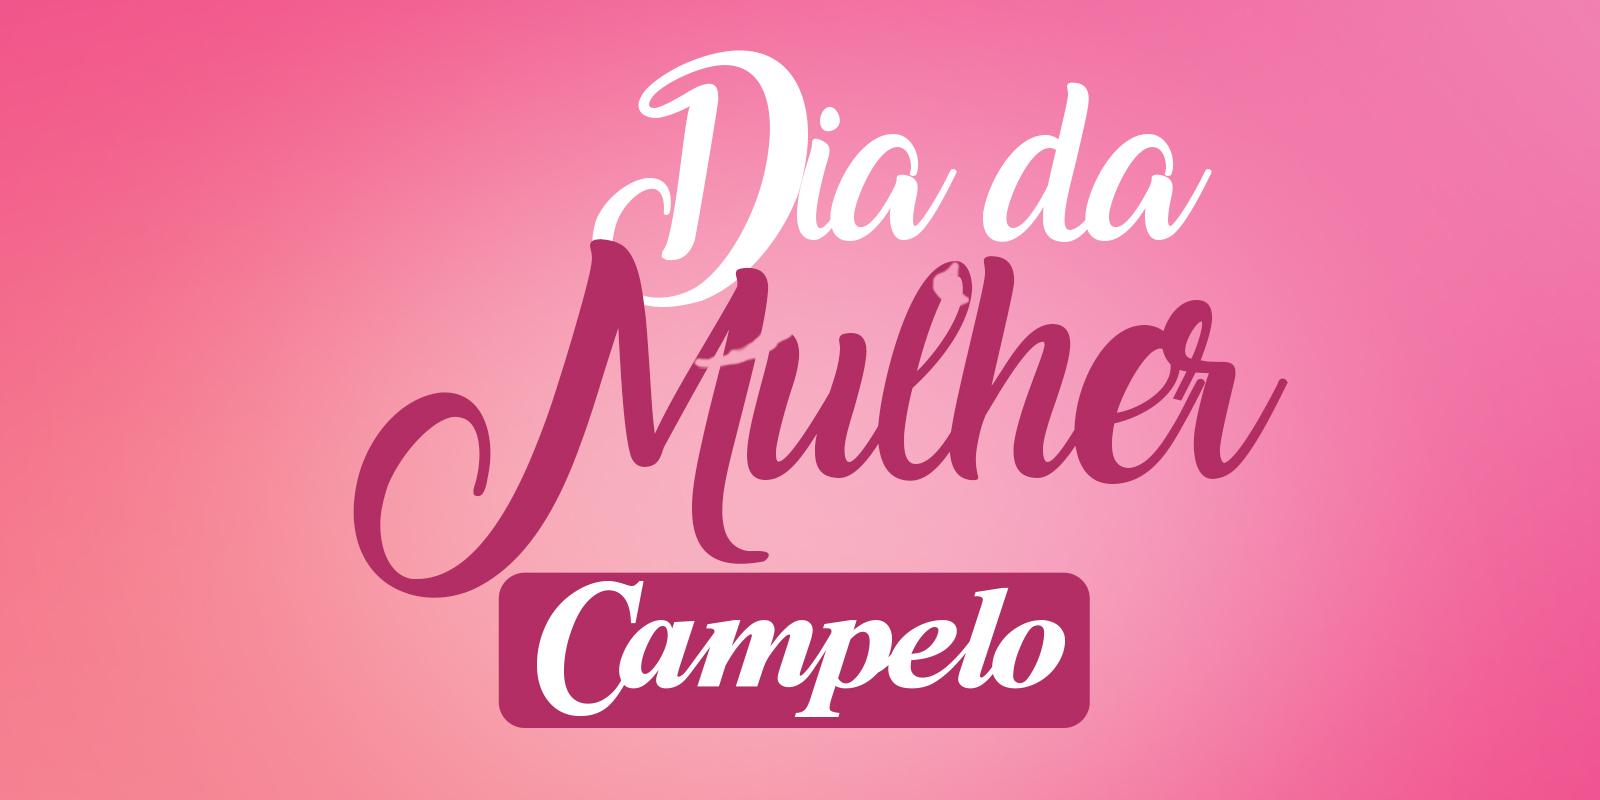 CAMPELO CLUB: DIA DA MULHER 